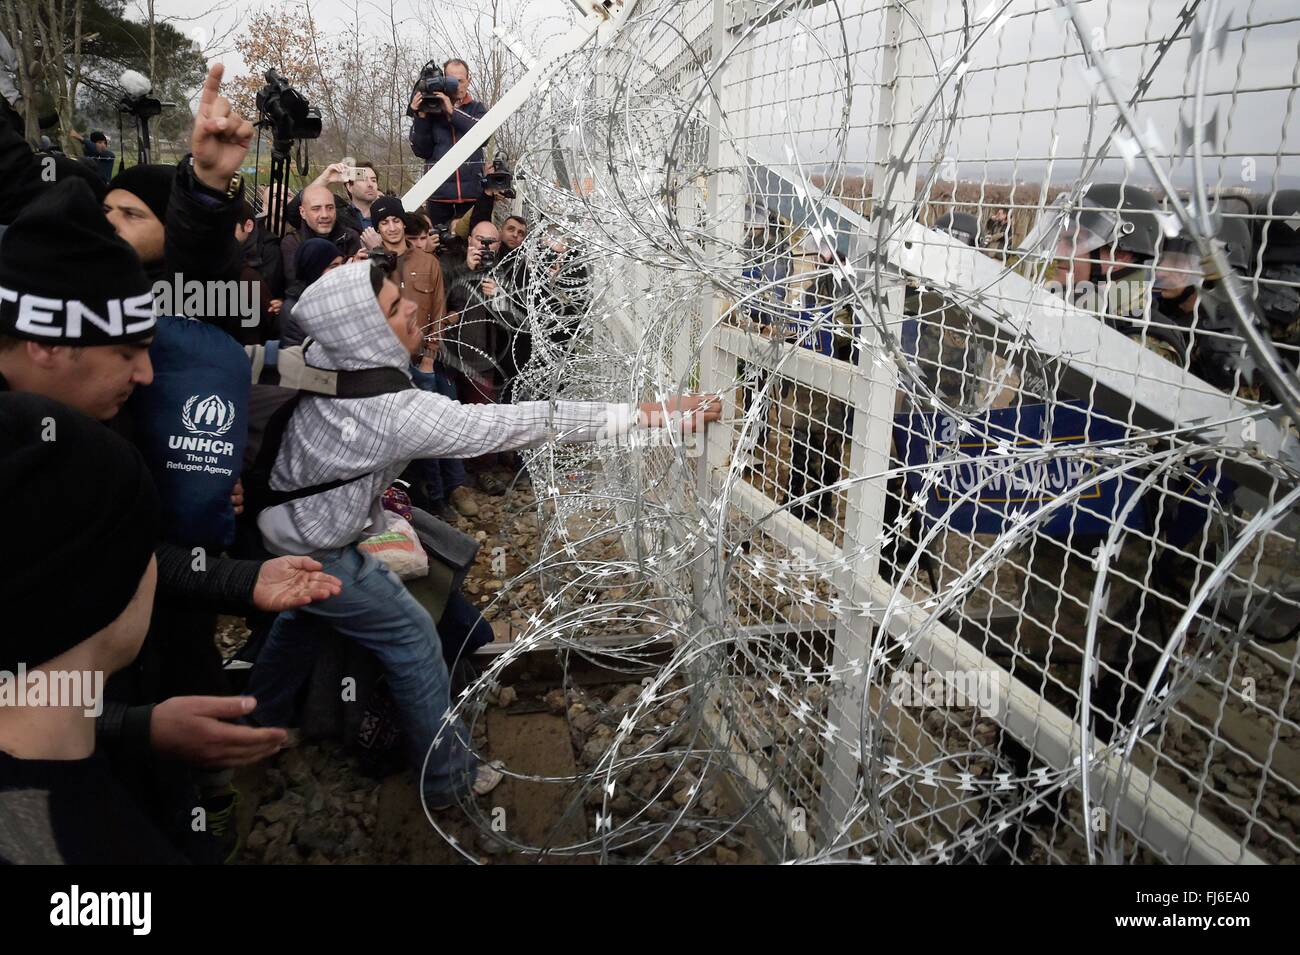 Idomeni, Grecia. Il 29 febbraio, 2016. Centinaia di migranti hanno provato oggi a rompere attraverso la barriera che li divide dalla Macedonia , la polizia ha risposto con gas lacrimogeni e bombe suono dopo i migranti sono riusciti a sfondare la recinzione sulla ferrovia .migliaia di migranti sono bloccati alla frontiera tra la Grecia e la Macedonia dove solo i siriani e gli iracheni possono passare , tre gruppi al giorno come hanno fatto il loro cammino verso l'Unione europea. Gli Aramei migranti protesta bloccando la ferrovia e chiedono la immediata apertura della frontiera . Credito: AGENZIA SINTESI/Alamy Liv Foto Stock